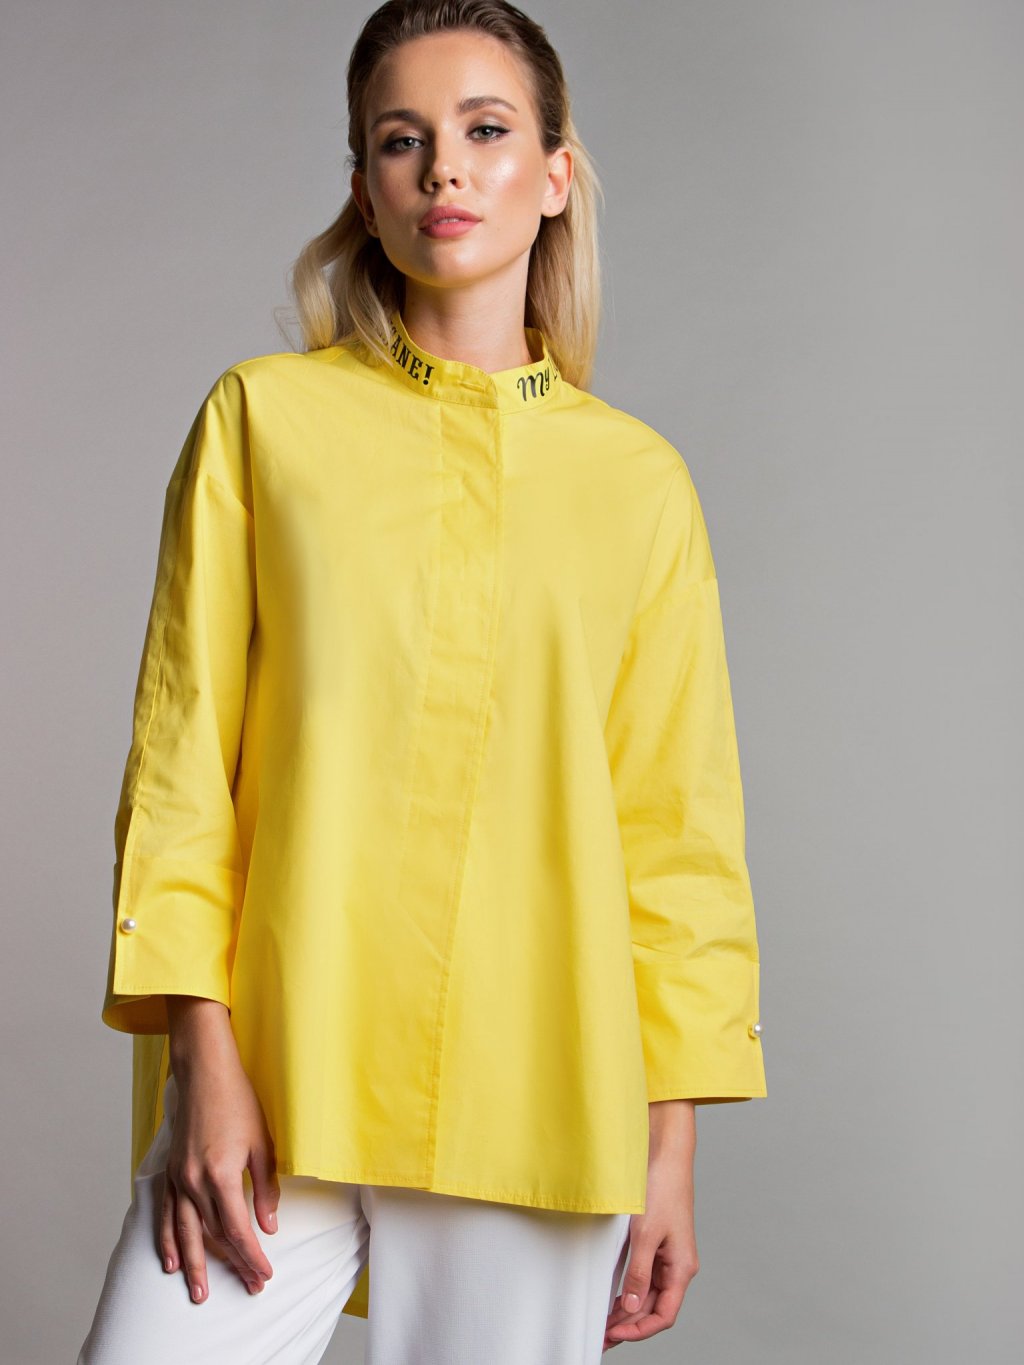 Блуза с надписями цвет желтый Б-115-5 - 2